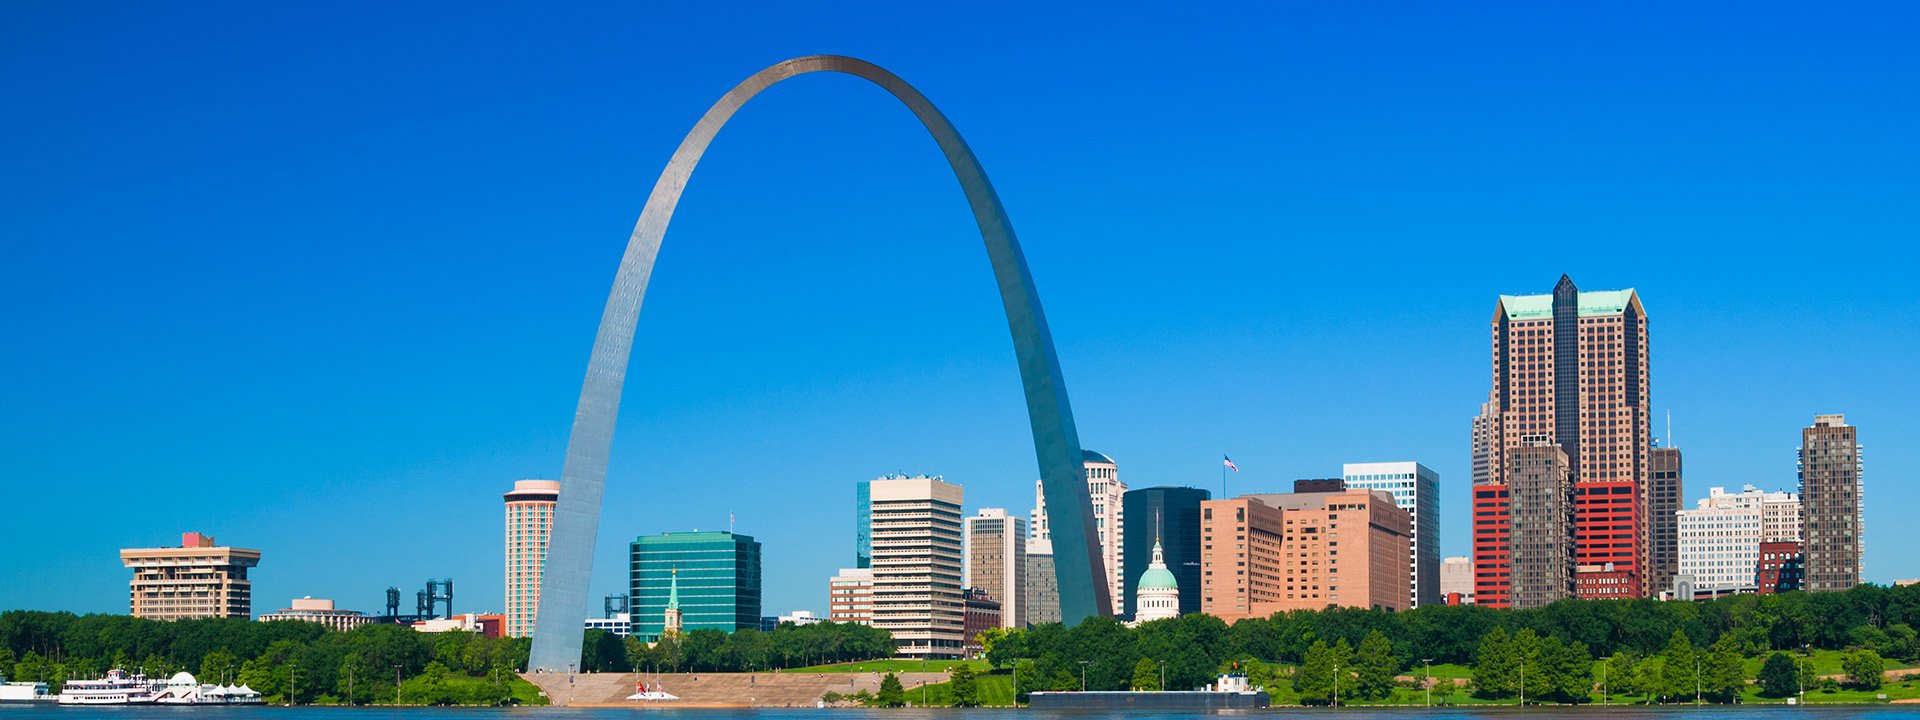 St. Louis Arch in Missouri